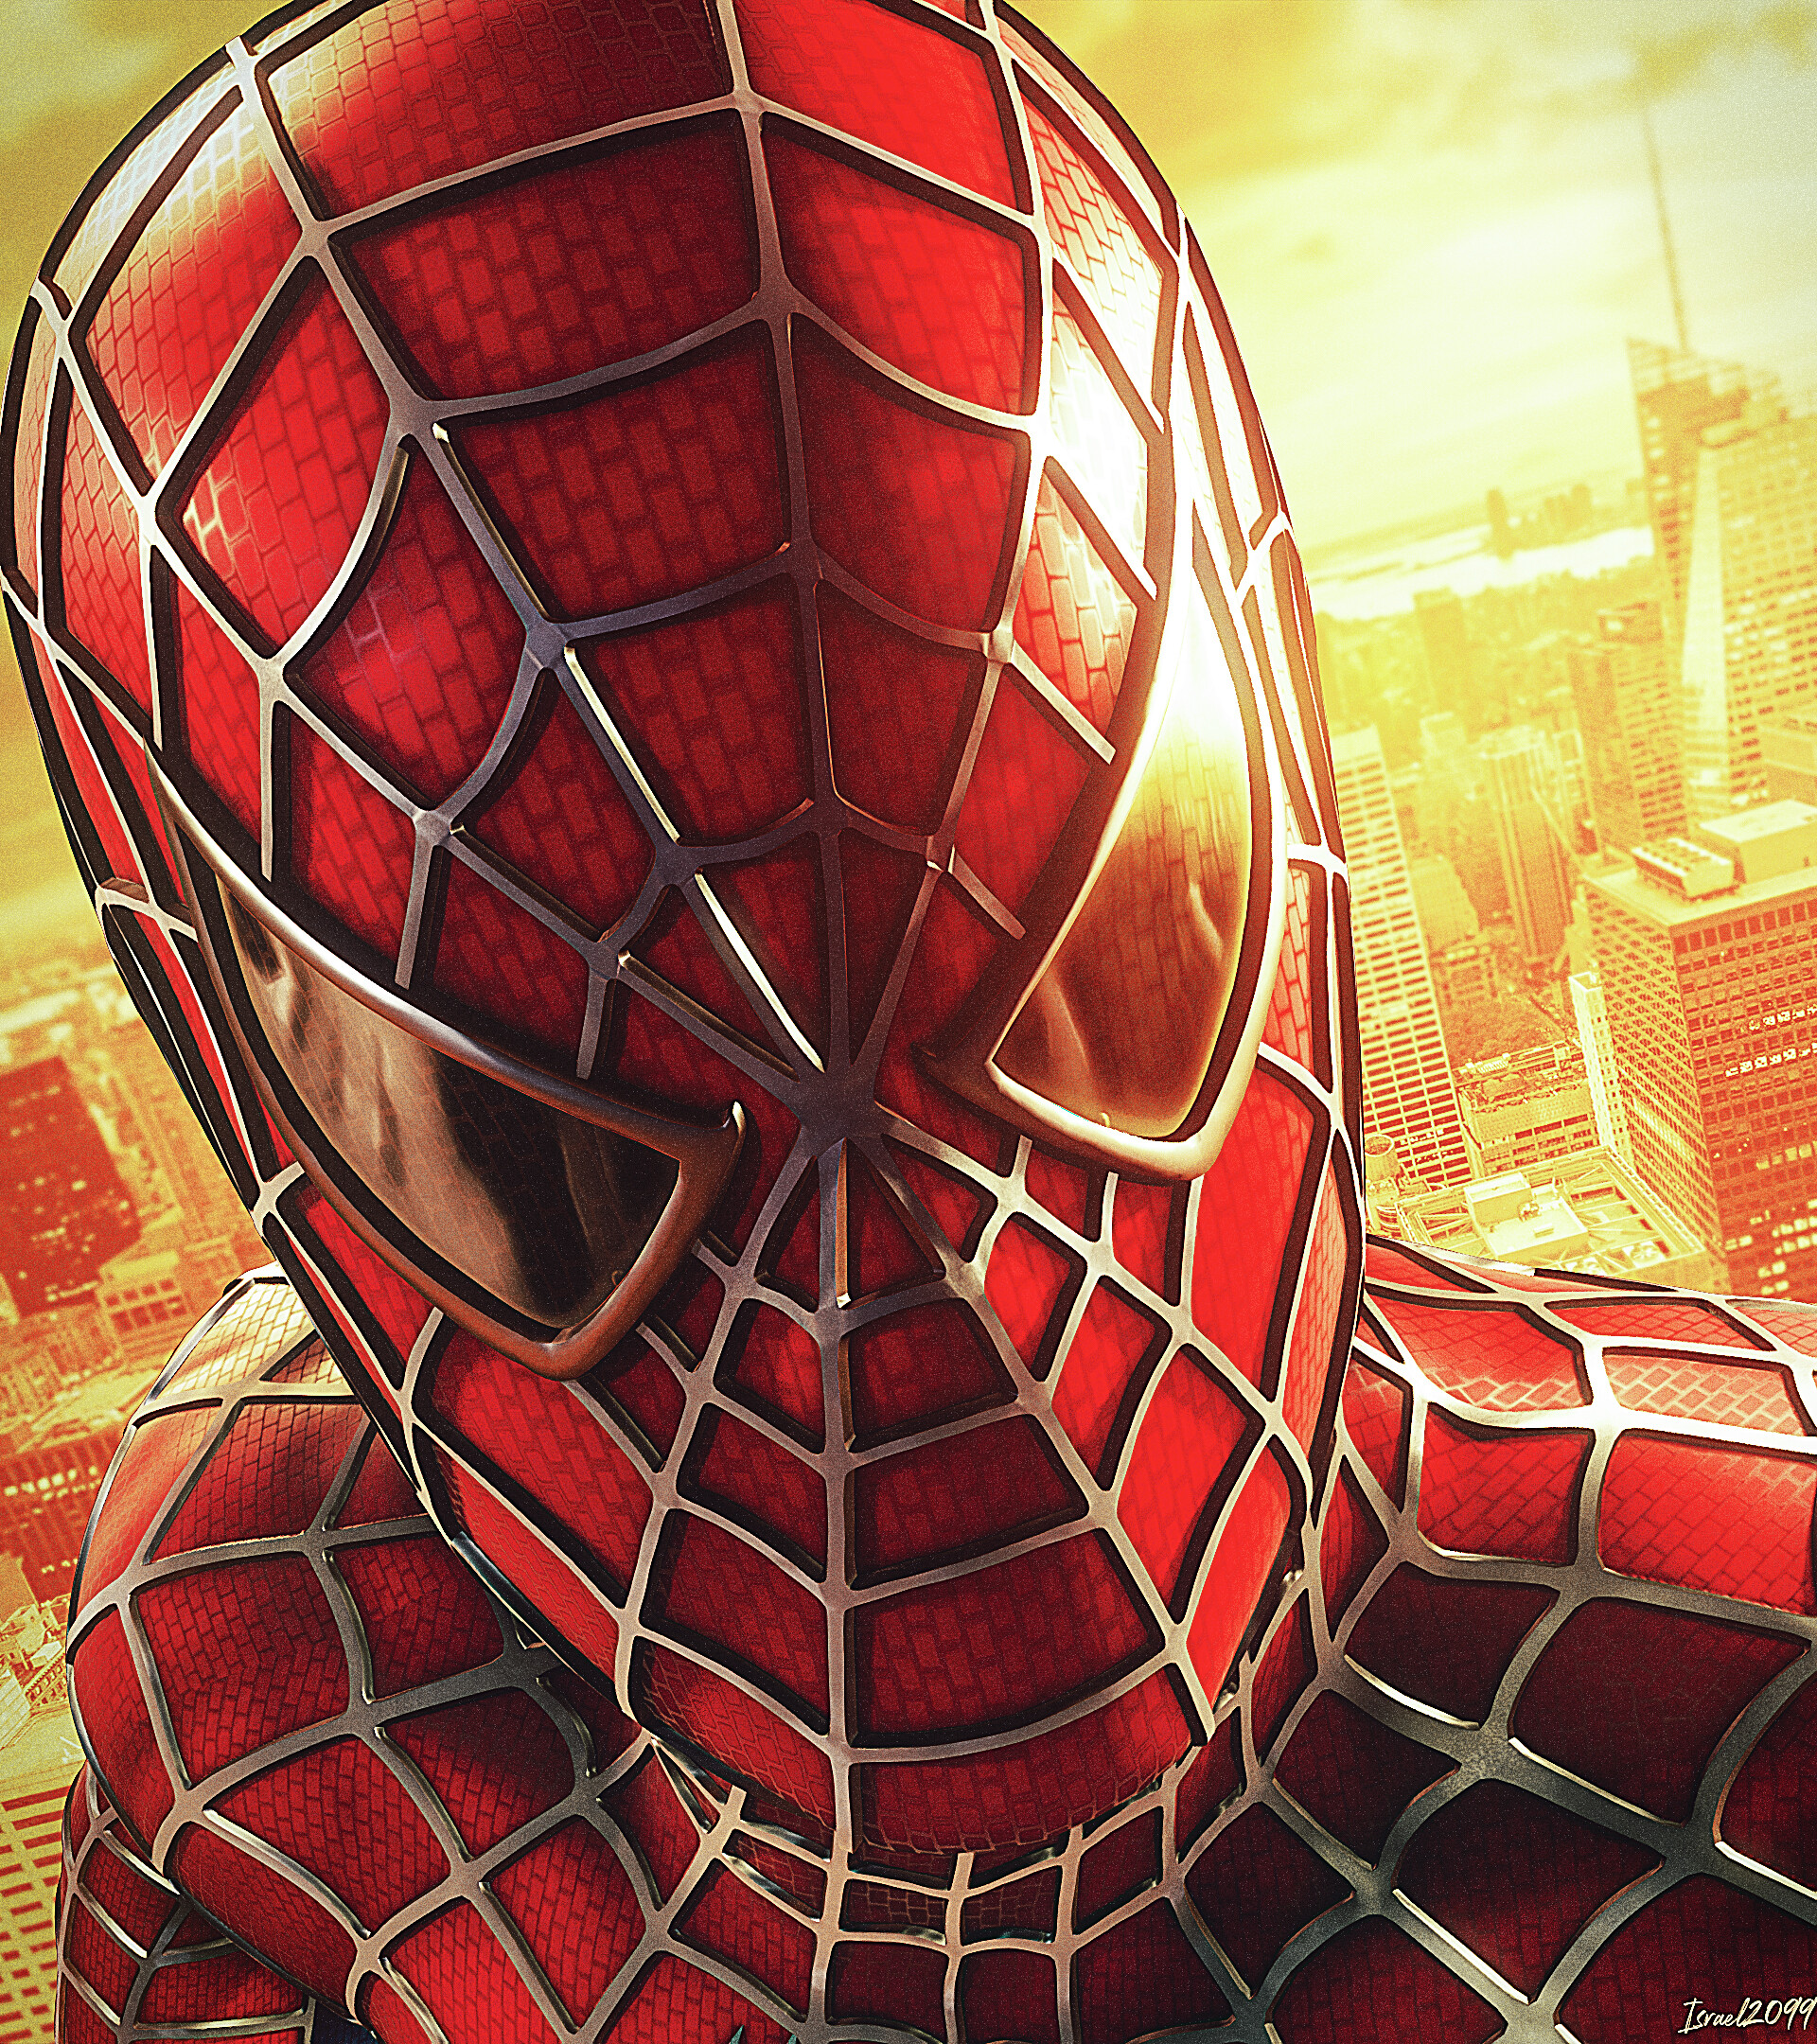 Spider-man: Tận hưởng thế giới của Spider-man bằng cách xem các bức ảnh đẹp về chiến binh nhện. Trong hình ảnh đó, bạn sẽ thấy một siêu anh hùng đầy cảm xúc và tài năng, chiến đấu chống lại tội phạm và bảo vệ thành phố.